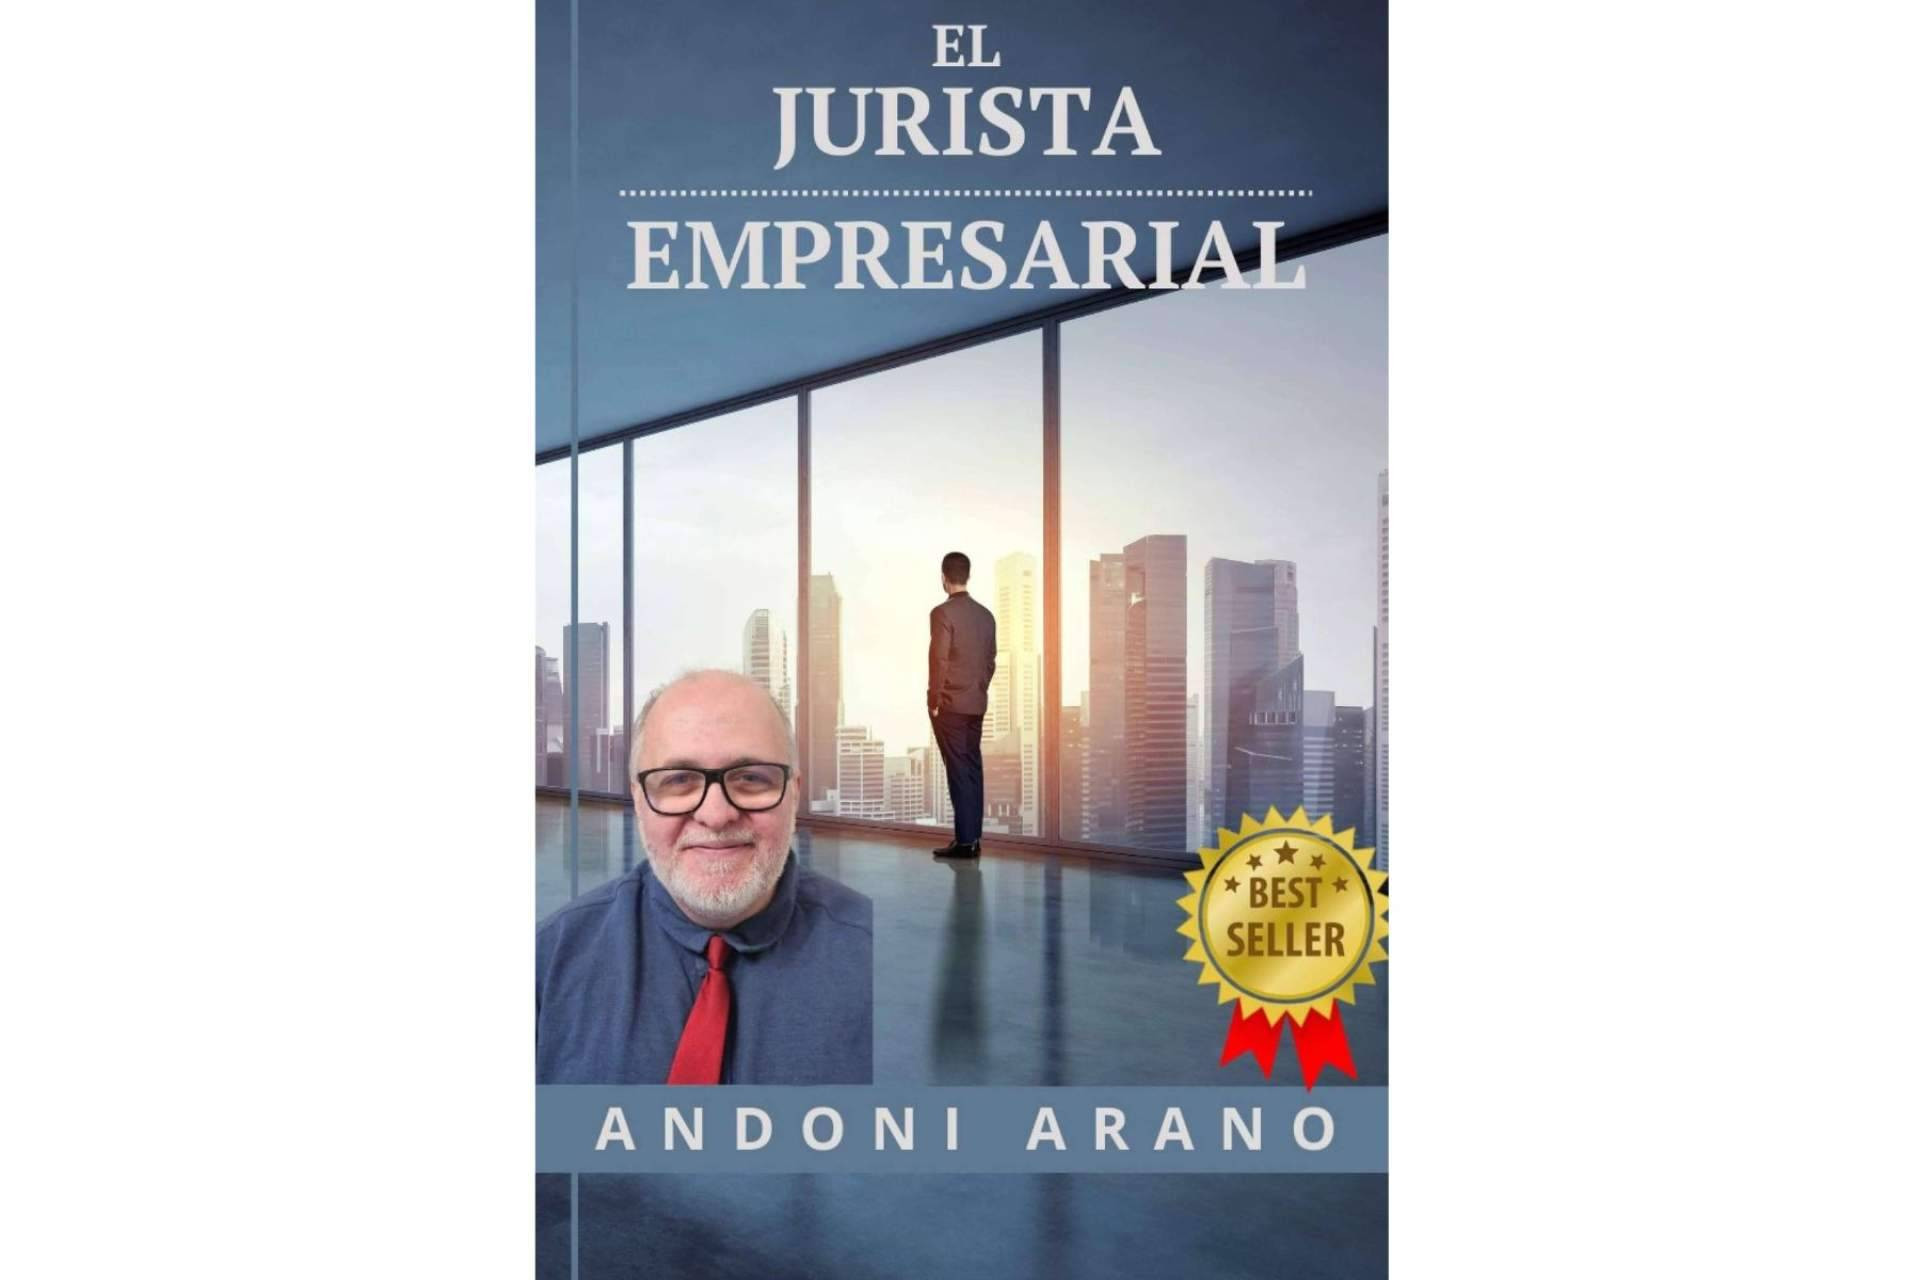  Nuevo best seller 'El jurista empresarial', la historia para convertirse en un empresario de abogados de Andoni Arano 